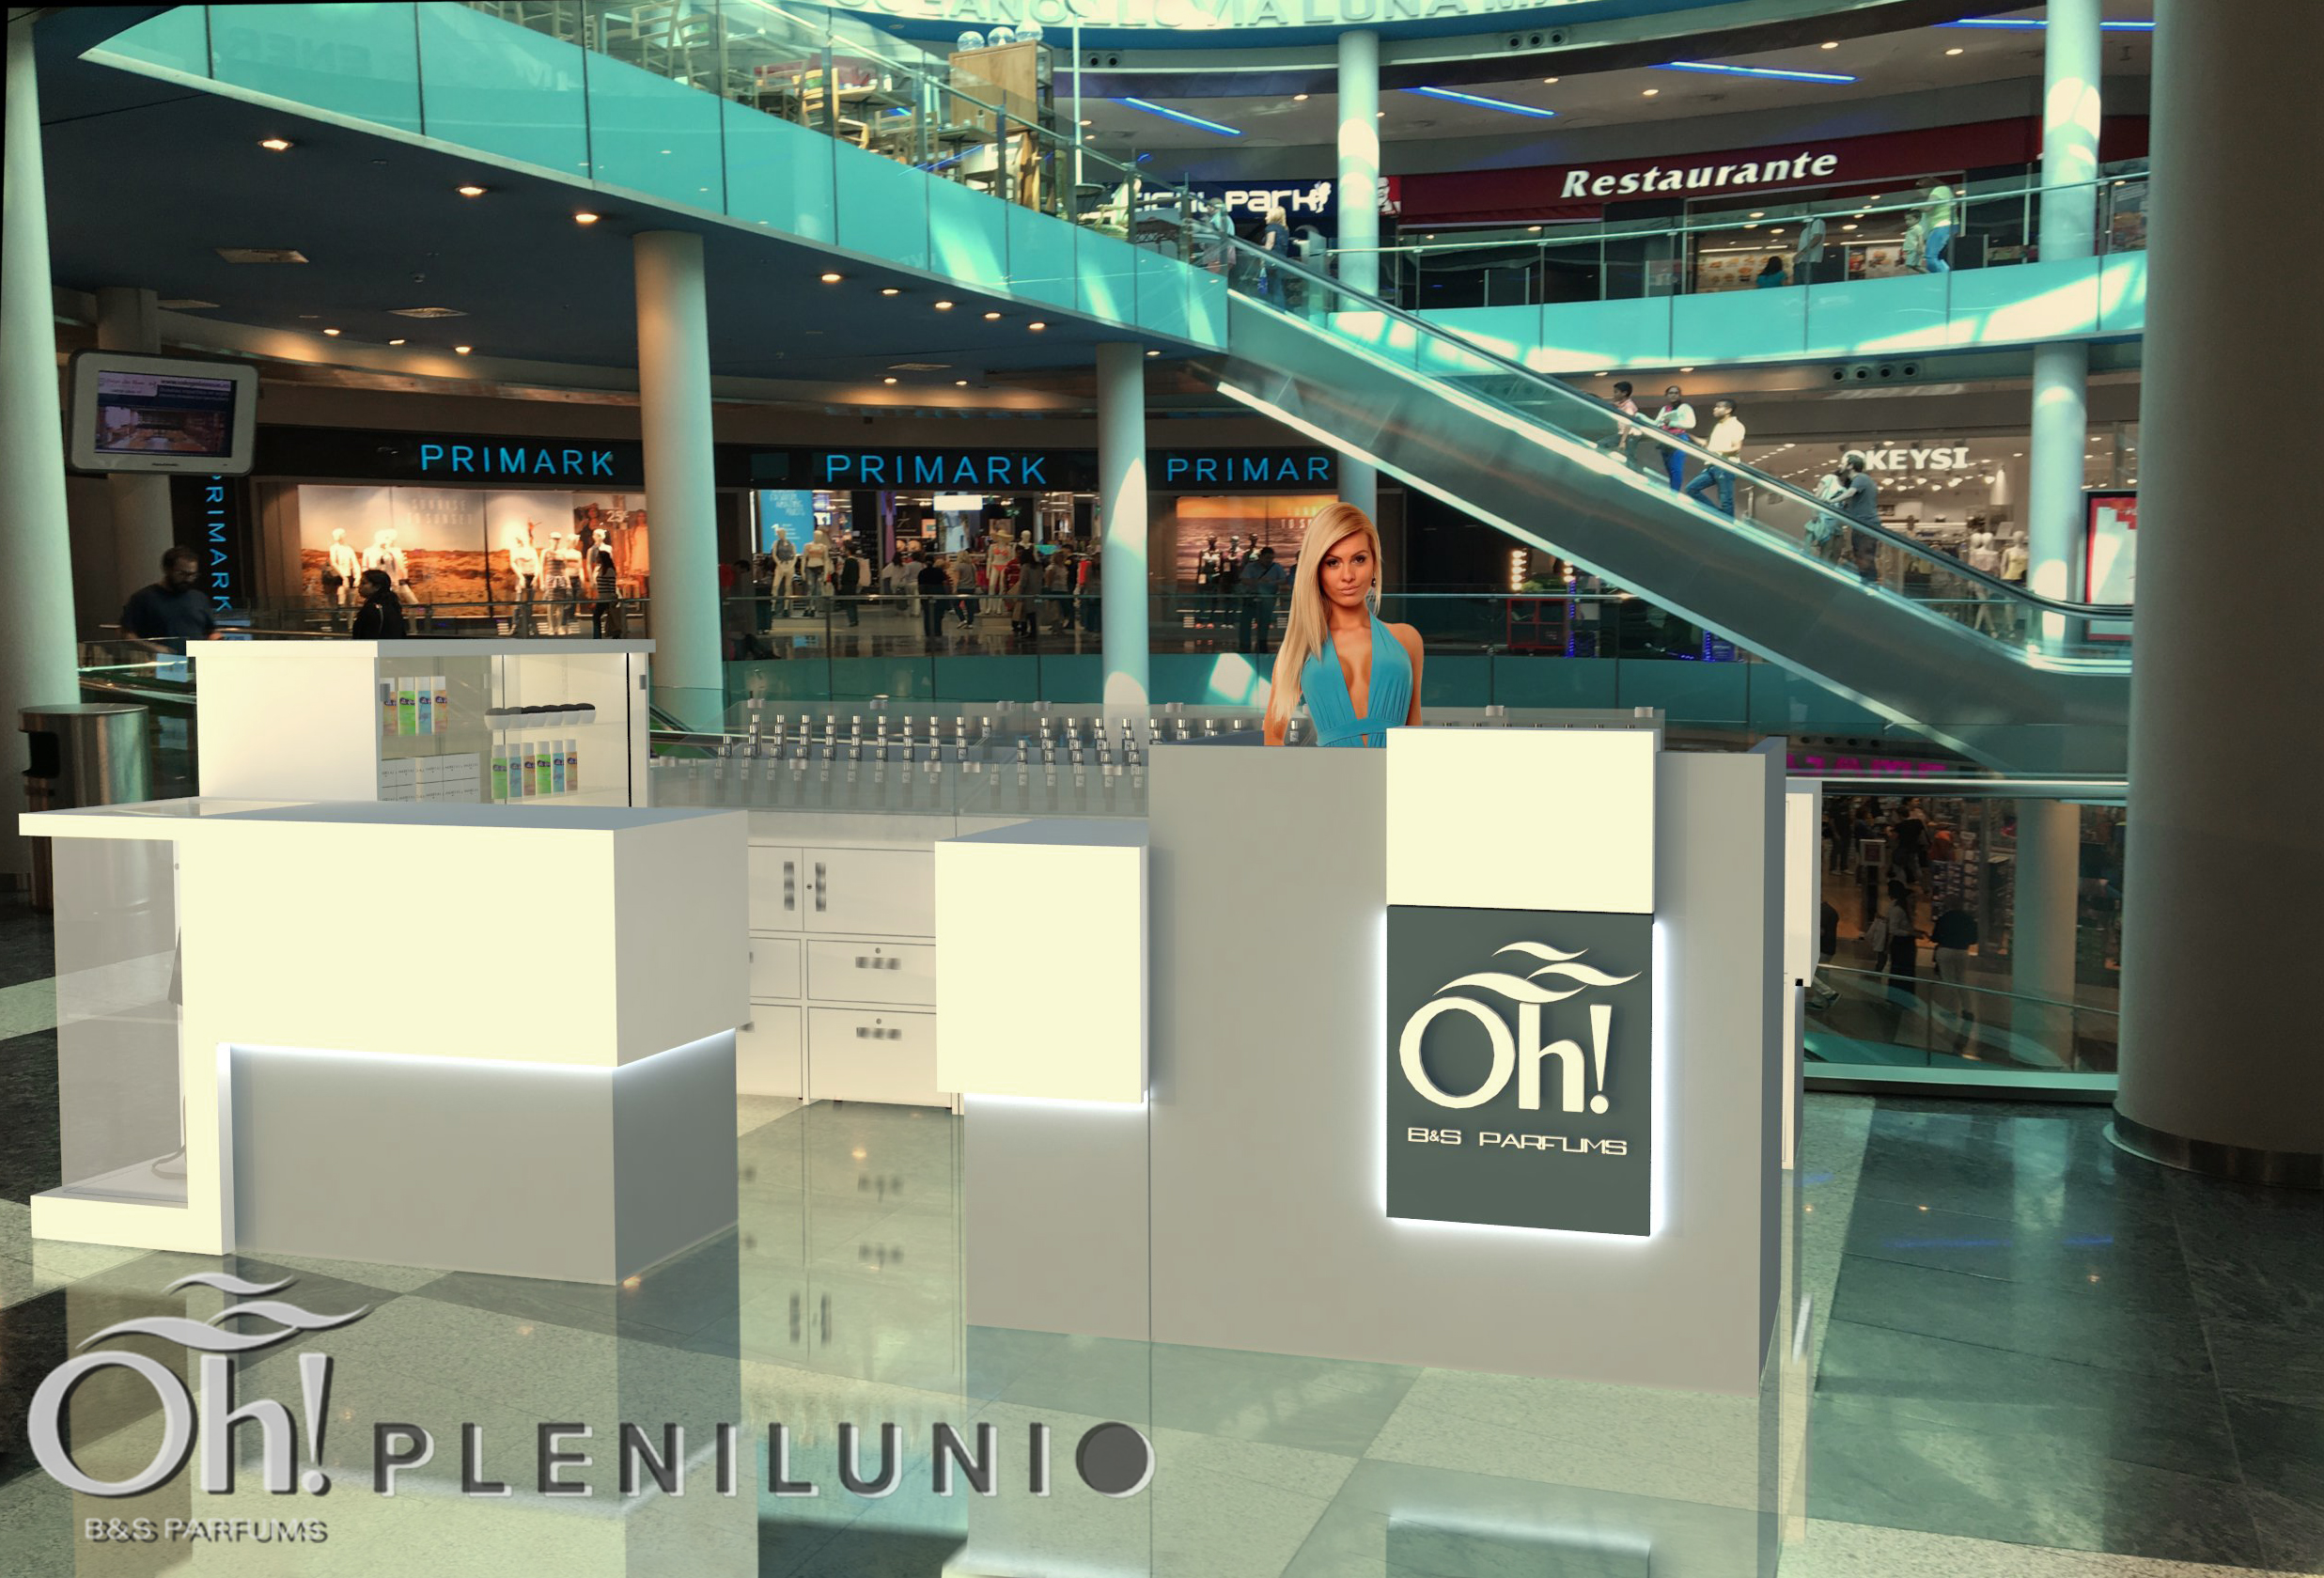 oh-bs-parfums-abrira-proximamente-una-nueva-tienda-franquiciada-centro-comercial-plenilunio-madrid